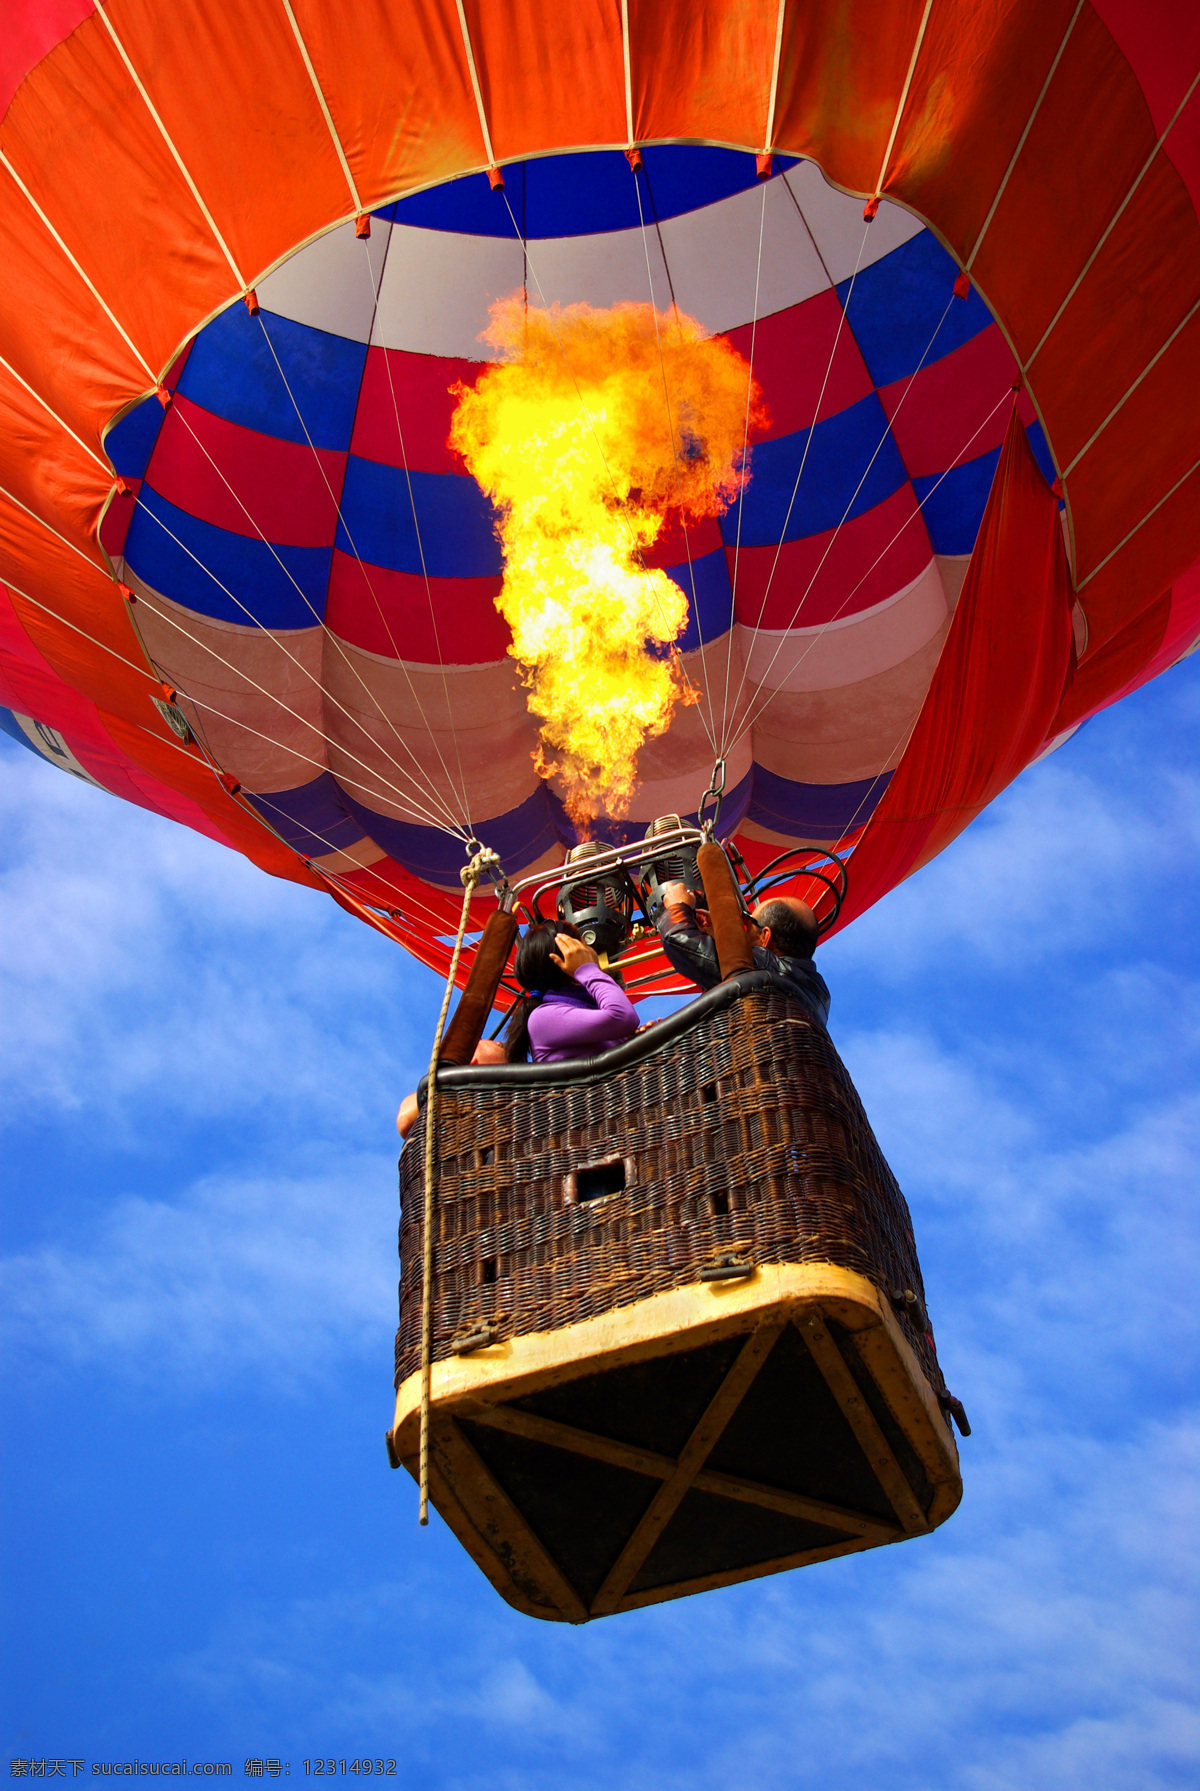 热气球 上 人物 火焰 彩色 蓝天白云 空中热气球 天空 旅行 轻气球 自然风景 其他类别 生活百科 红色